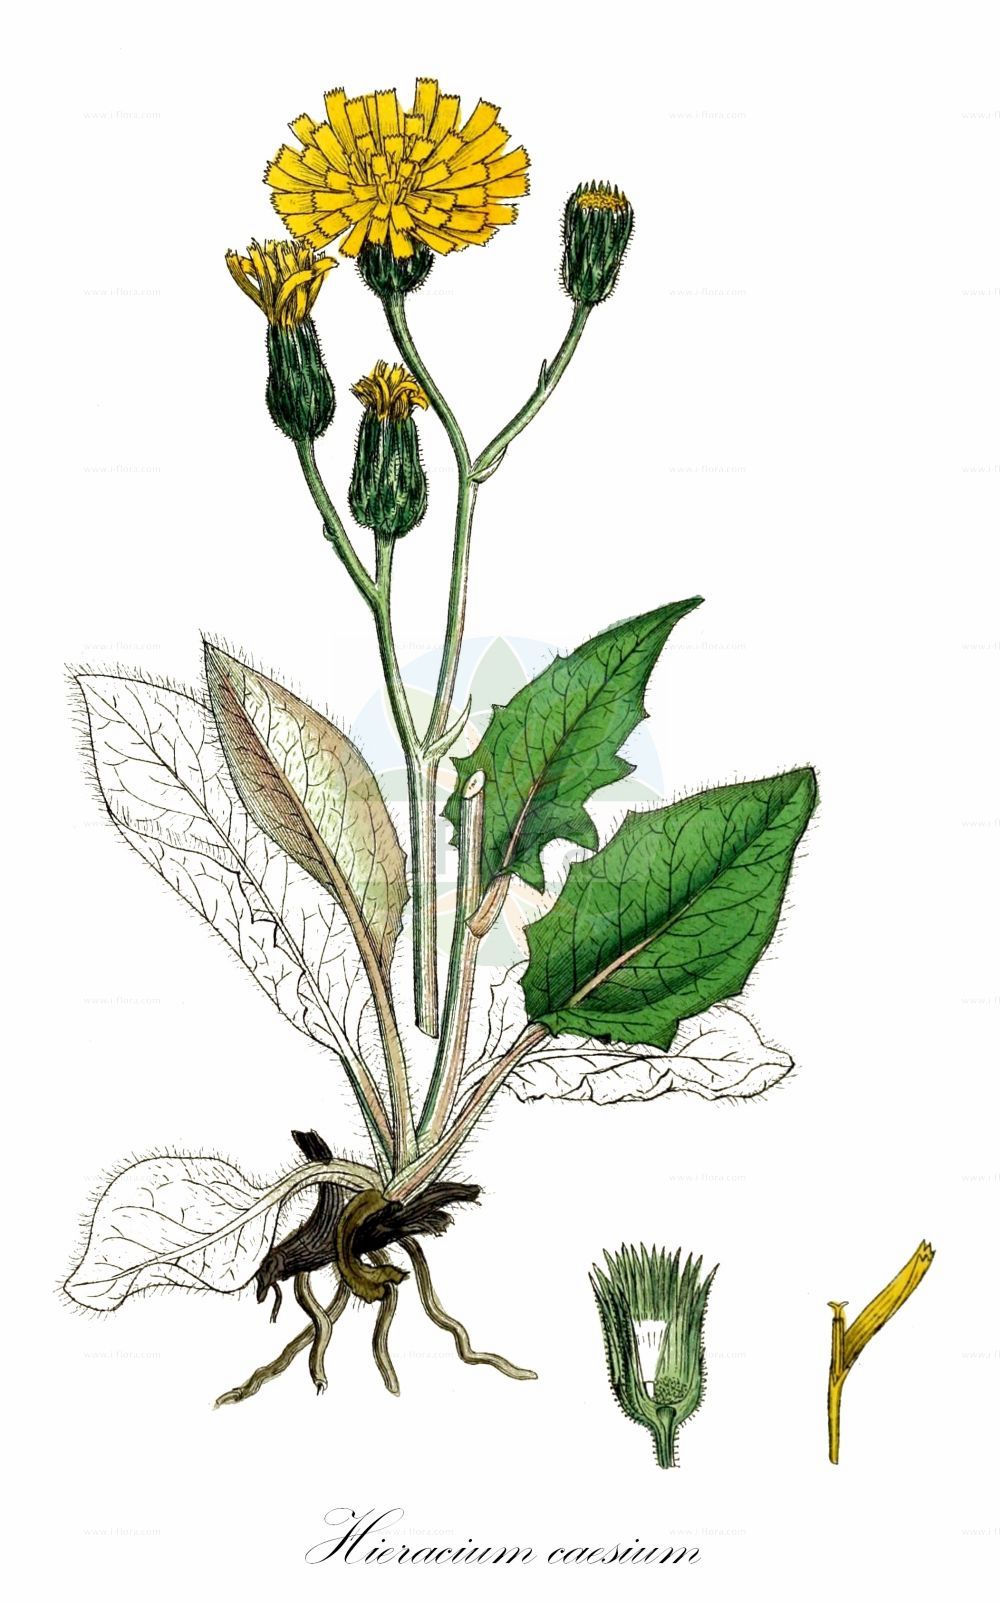 Historische Abbildung von Hieracium caesium (Blaugraues Habichtskraut - Blue-green Hawkeed). Das Bild zeigt Blatt, Bluete, Frucht und Same. ---- Historical Drawing of Hieracium caesium (Blaugraues Habichtskraut - Blue-green Hawkeed). The image is showing leaf, flower, fruit and seed.(Hieracium caesium,Blaugraues Habichtskraut,Blue-green Hawkeed,Hieracium caesium,Hieracium vulgatum subsp. caesium,Blaugraues Habichtskraut,Meergruenes Habichtskraut,Blue-green Hawkeed,Hieracium,Habichtskraut,Hawkweeds,Asteraceae,Korbblütengewächse,Daisy family,Blatt,Bluete,Frucht,Same,leaf,flower,fruit,seed,Sowerby (1790-1813))